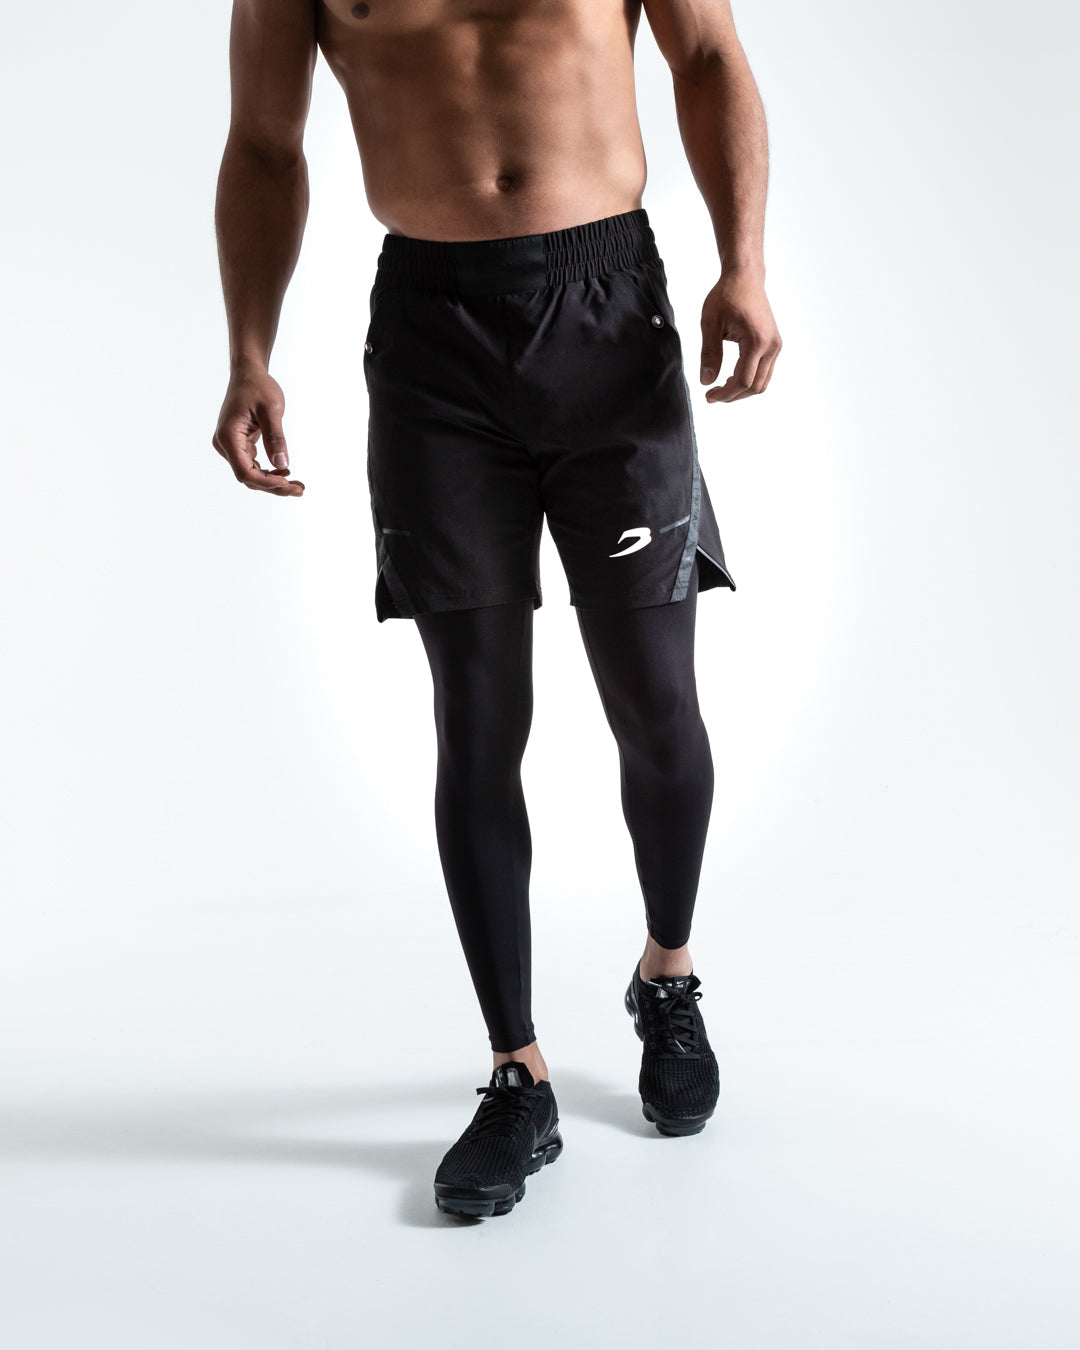 Wangsaura Fitness basketball shorts pocket double layer lightweight leggings